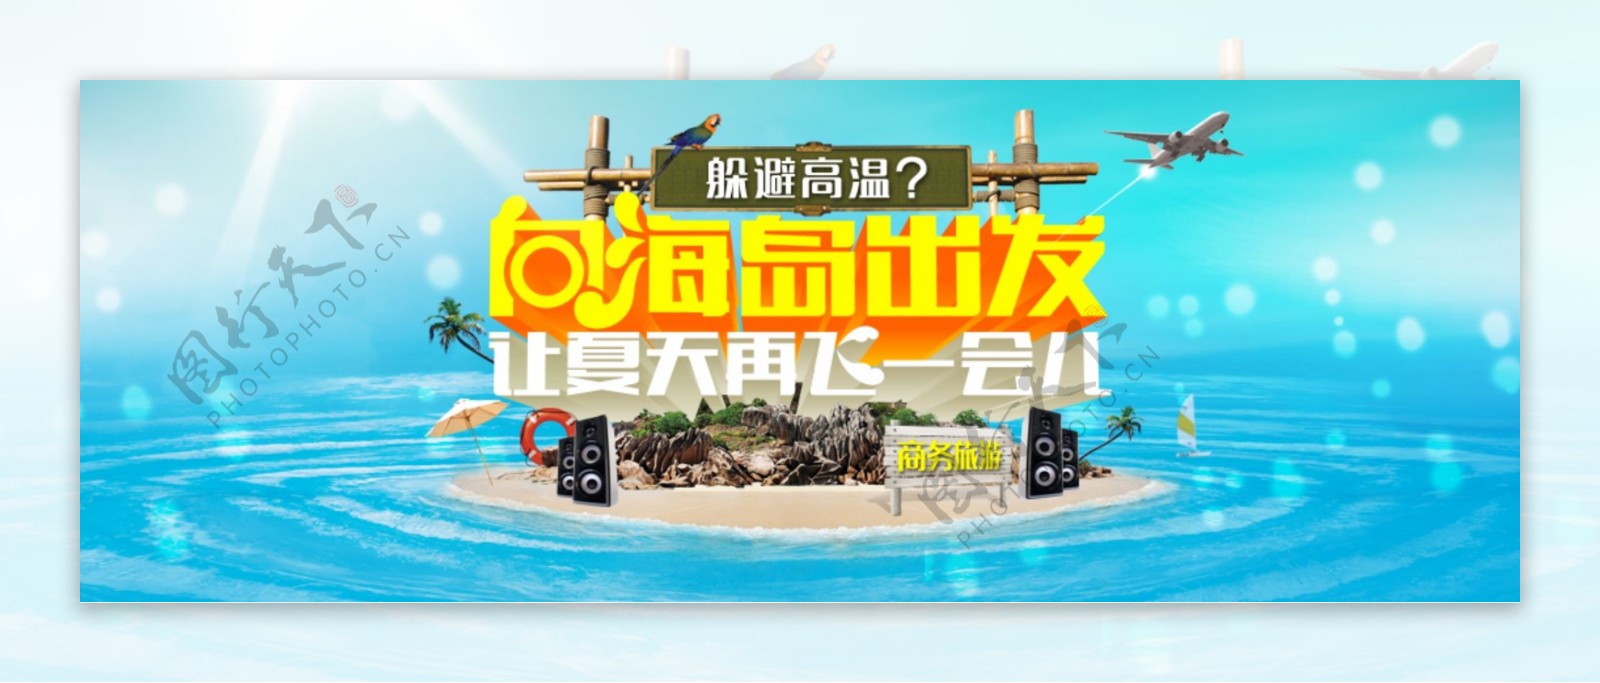 商务旅游淘宝海报banner